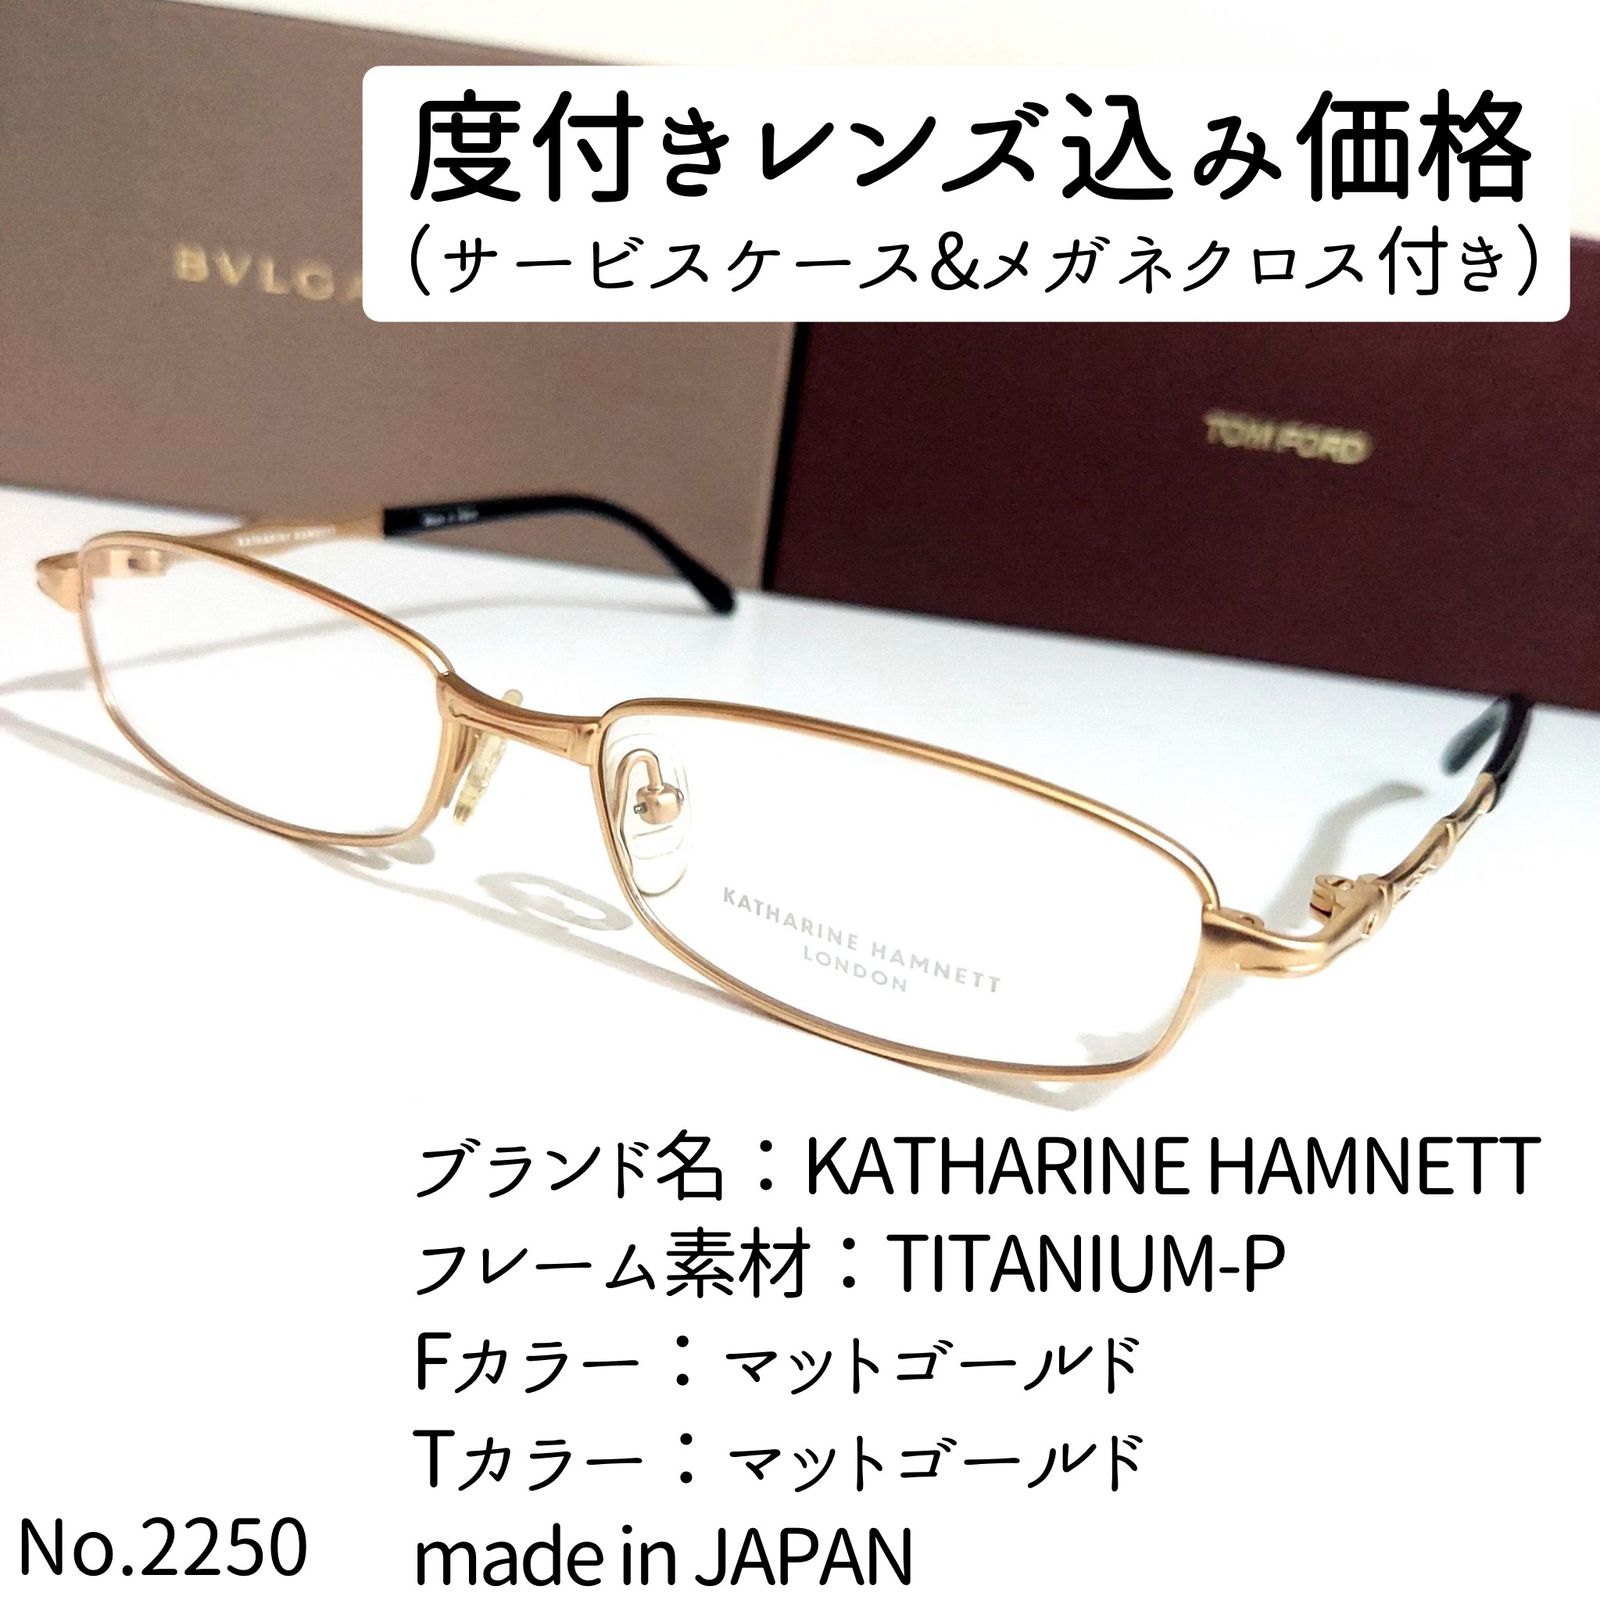 No.2250メガネ KATHARINE HAMNETT【度数入り込み価格】 - スッキリ生活